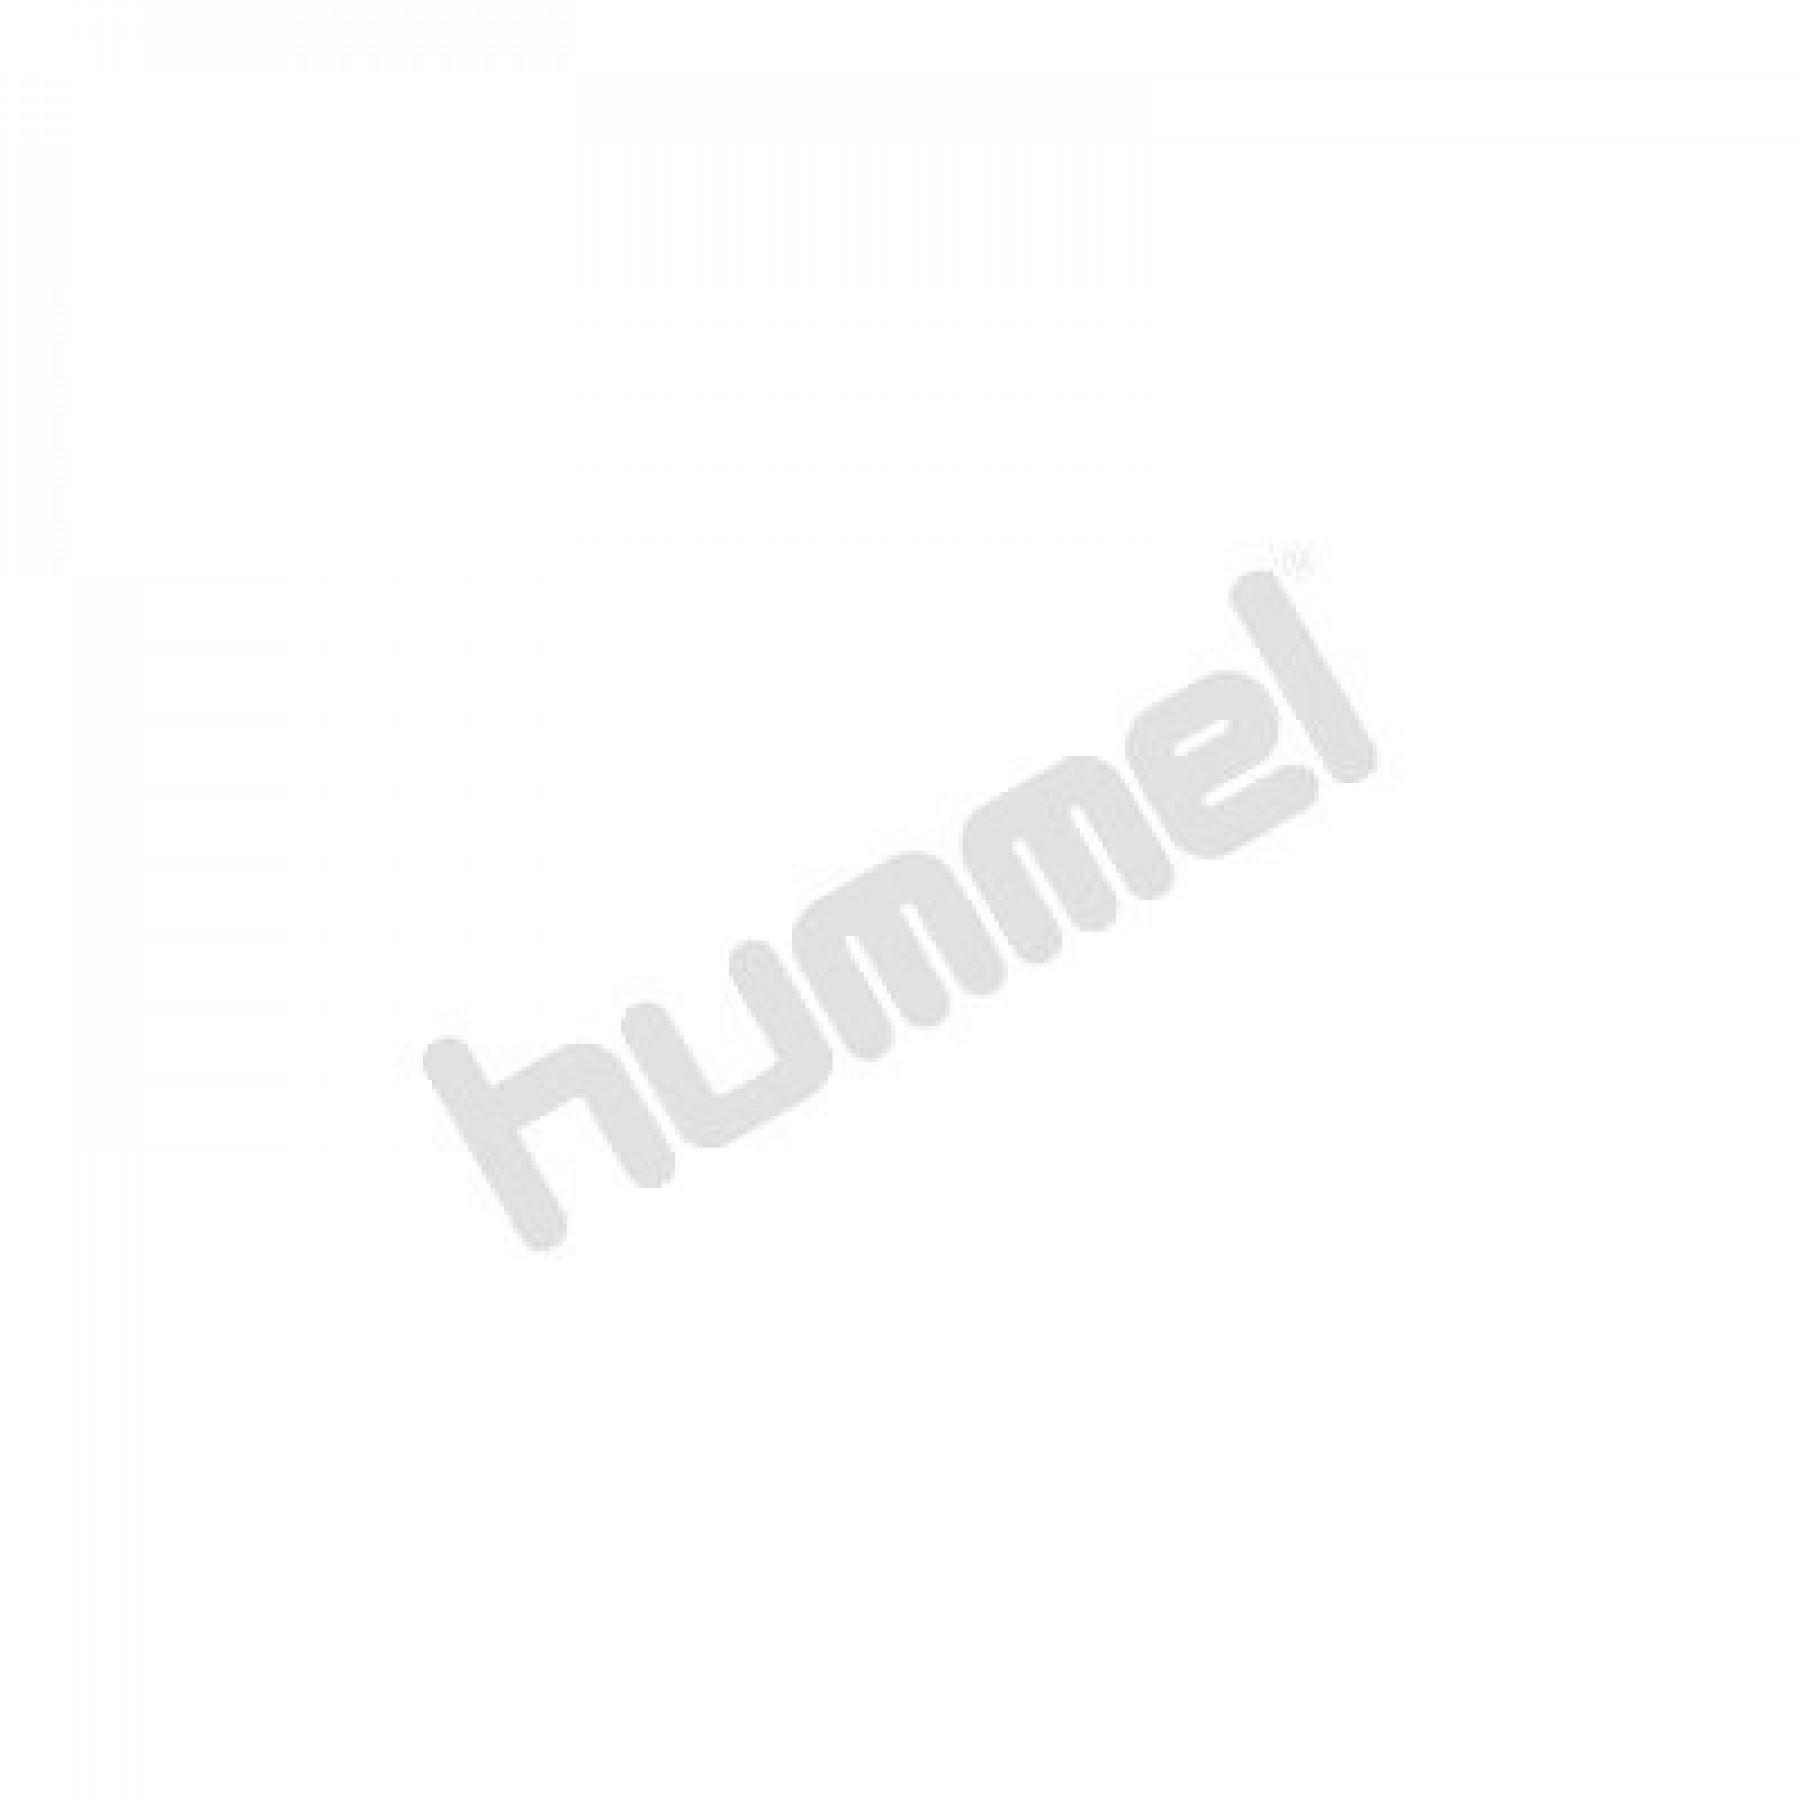 T-shirt femme Hummel hmlsofia loose short